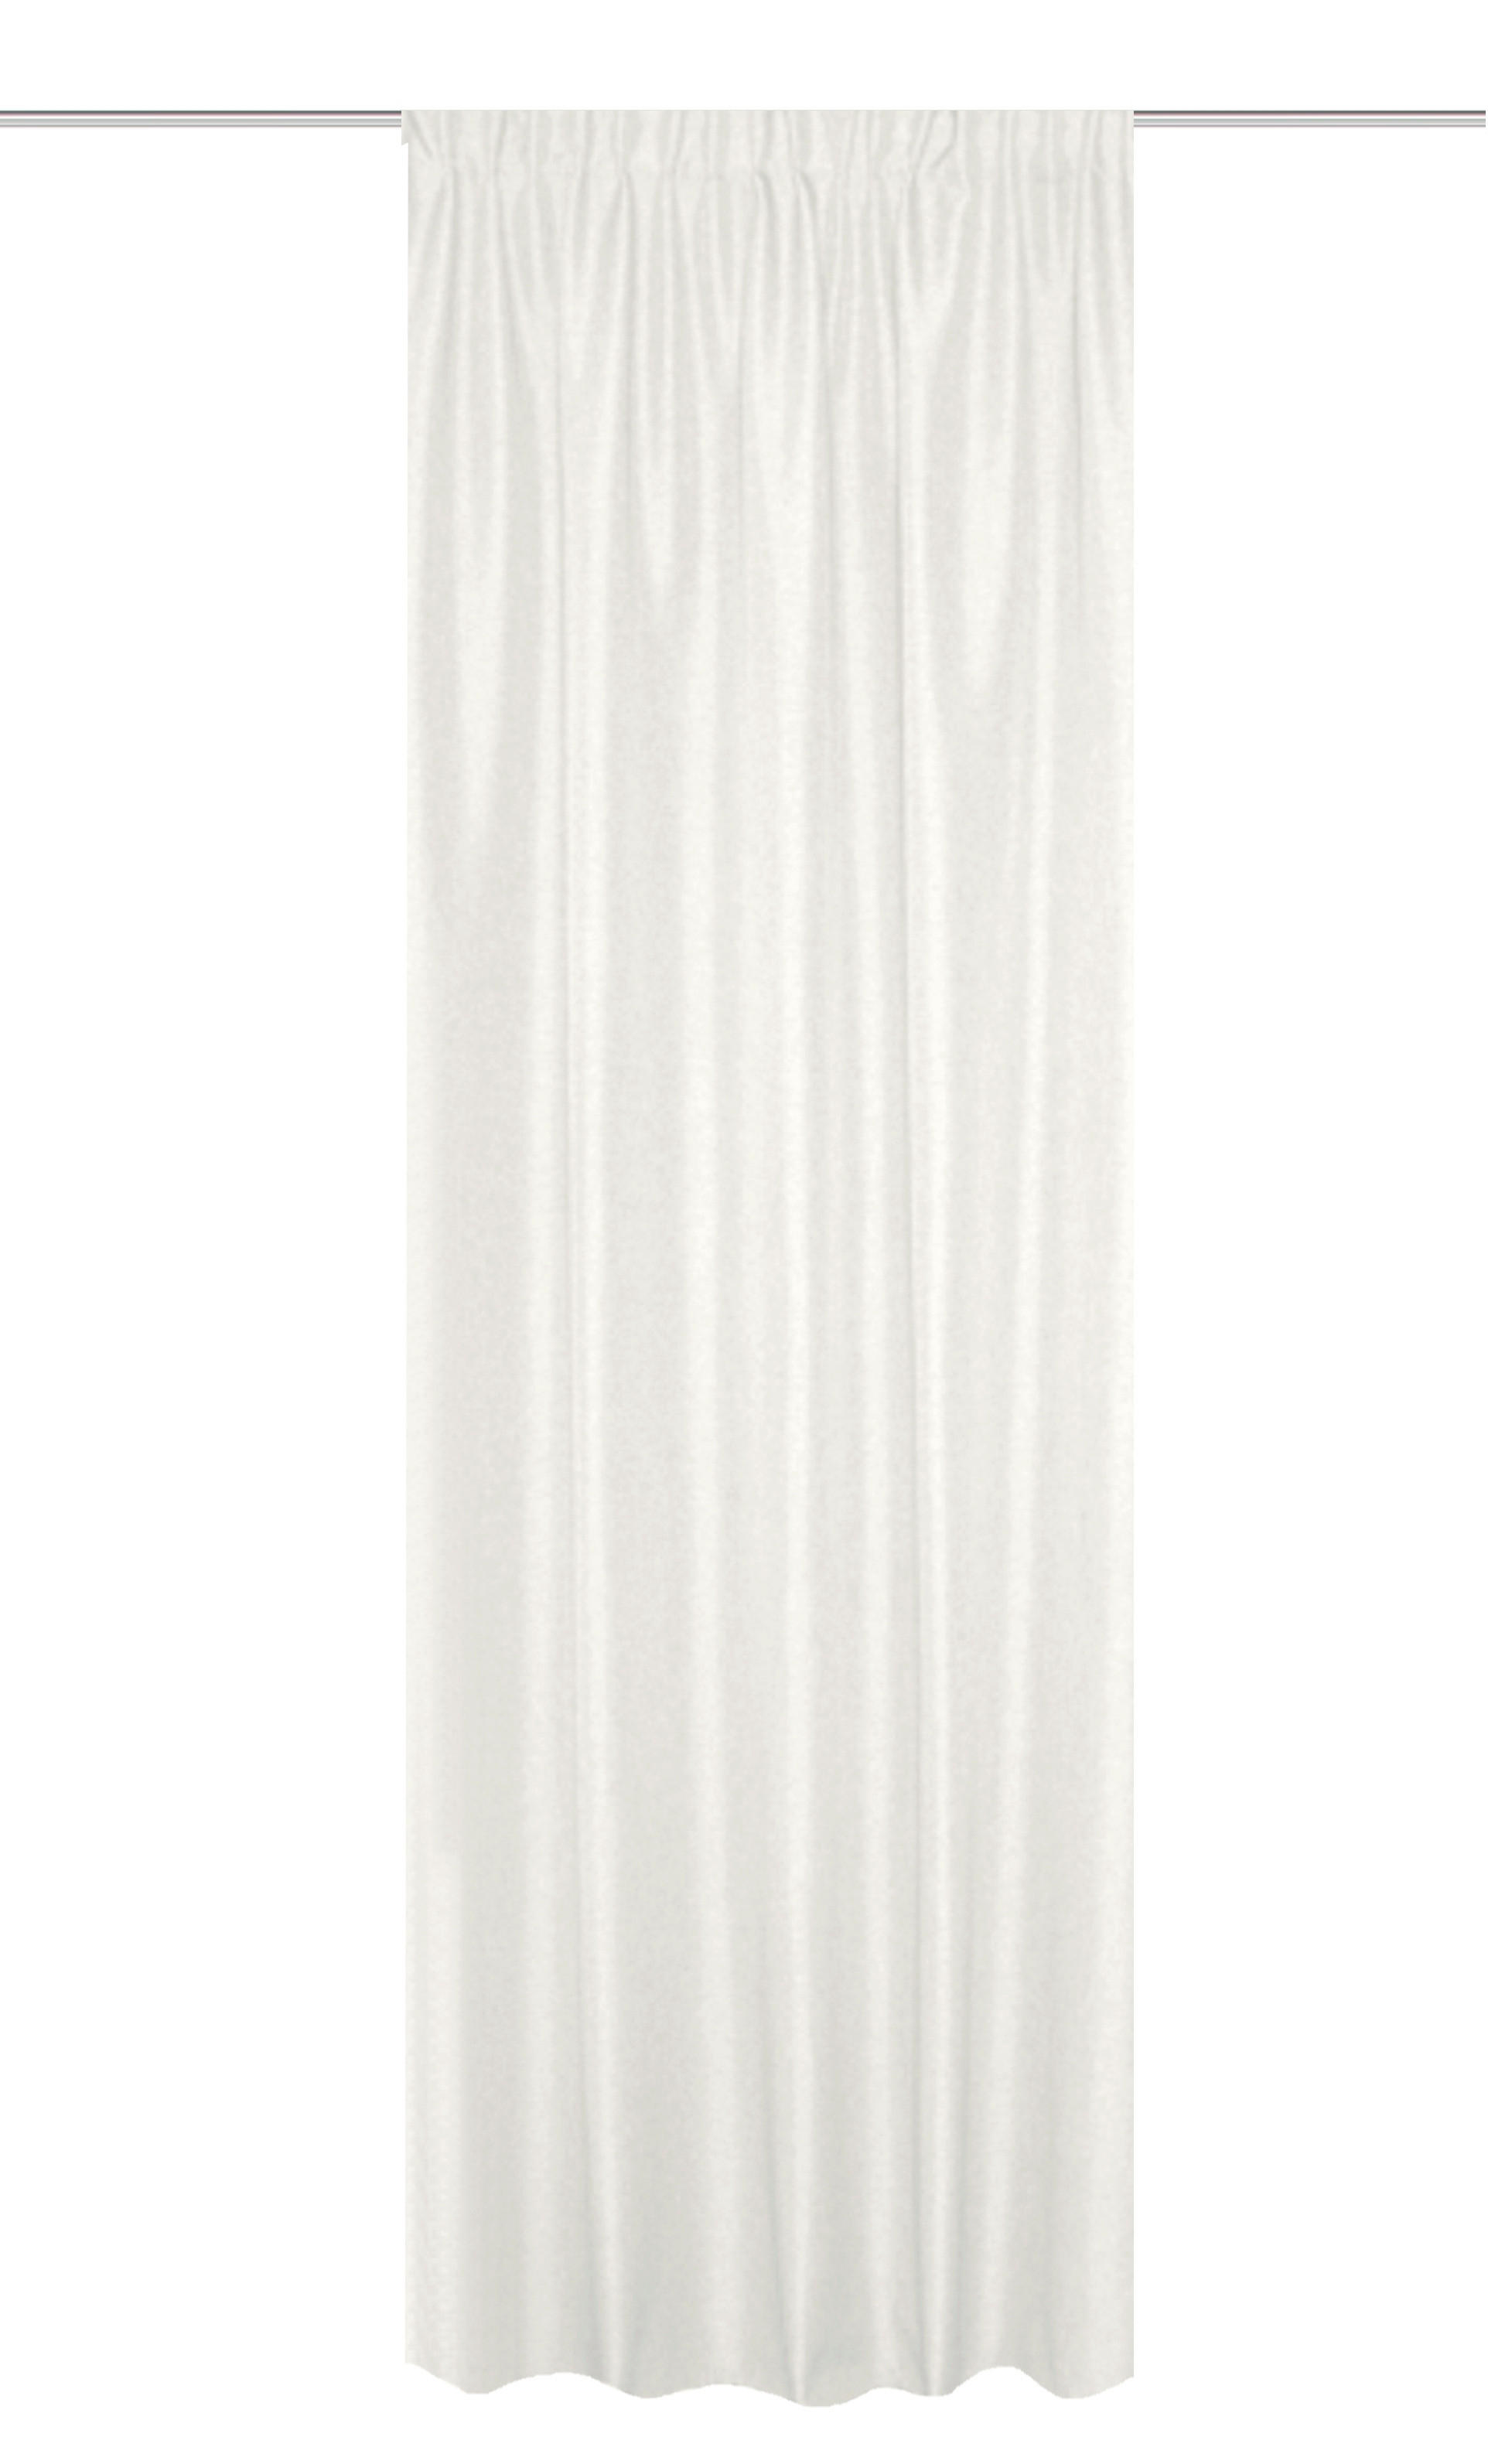 WÄRMESCHUTZVORHANG  blickdicht  135/245 cm   - Weiß, Basics, Textil (135/245cm)